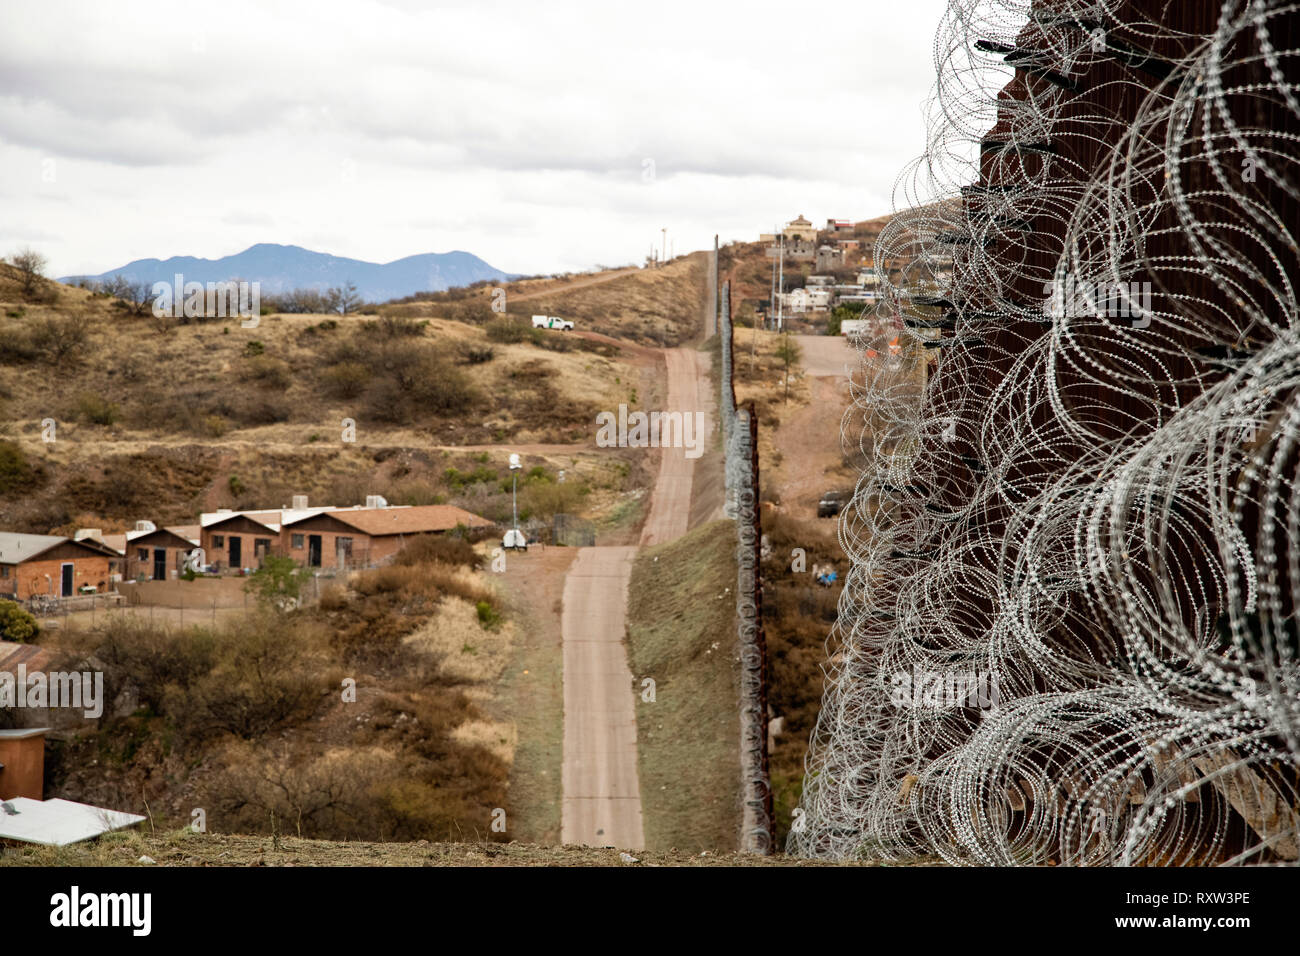 US-Mexiko internationale Grenze: Schichten der Ziehharmonika zu bestehenden Barriere Infrastruktur entlang der US-mexikanischen Grenze in der Nähe von Nogales, AZ, am 4. Februar 2019 aufgenommen. Weitere Informationen finden Sie unten. Stockfoto